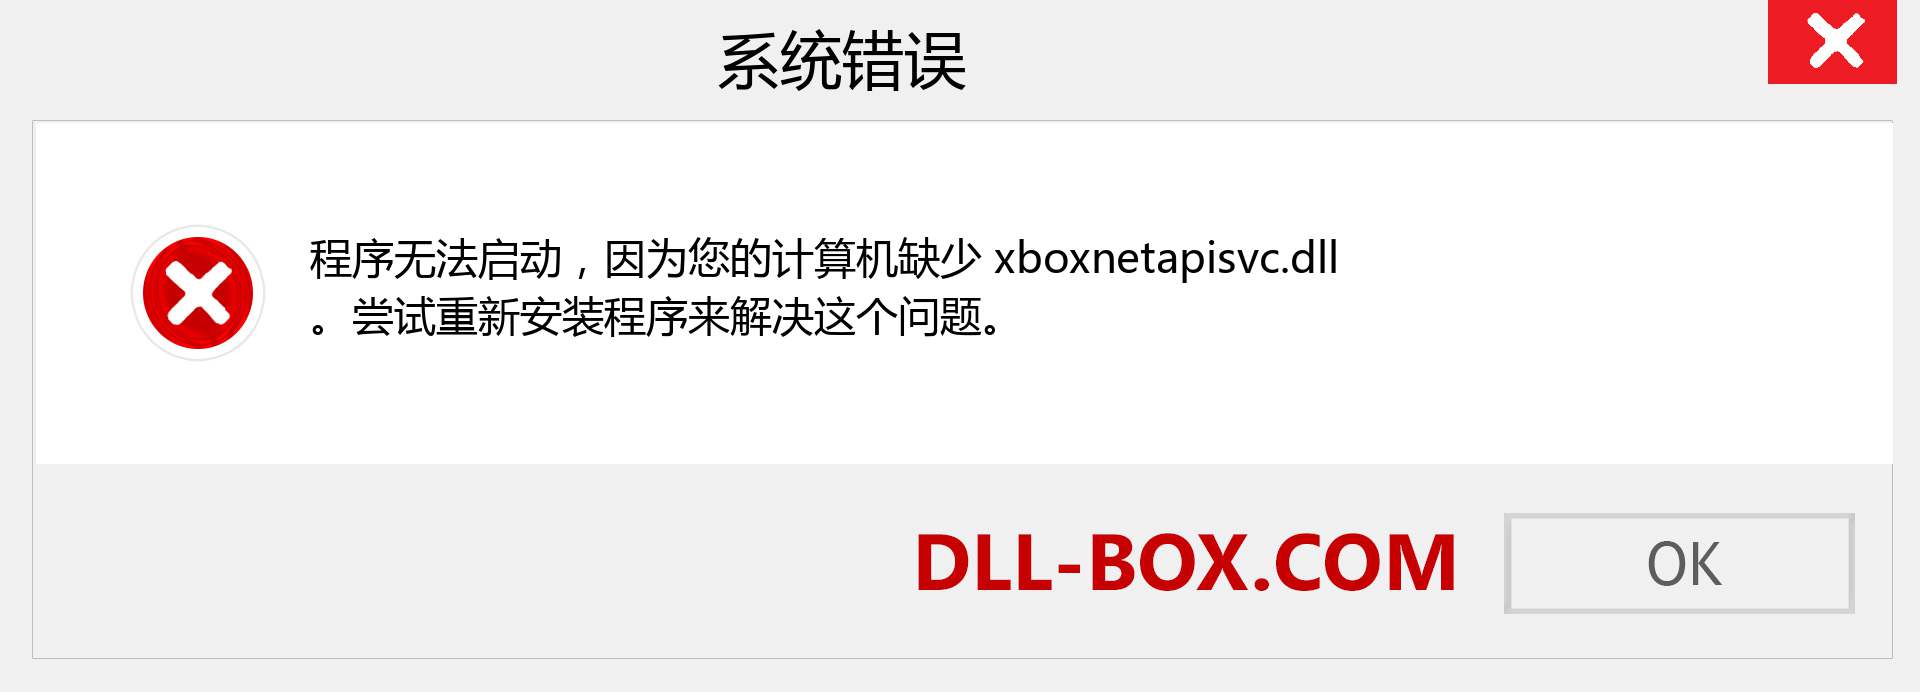 xboxnetapisvc.dll 文件丢失？。 适用于 Windows 7、8、10 的下载 - 修复 Windows、照片、图像上的 xboxnetapisvc dll 丢失错误